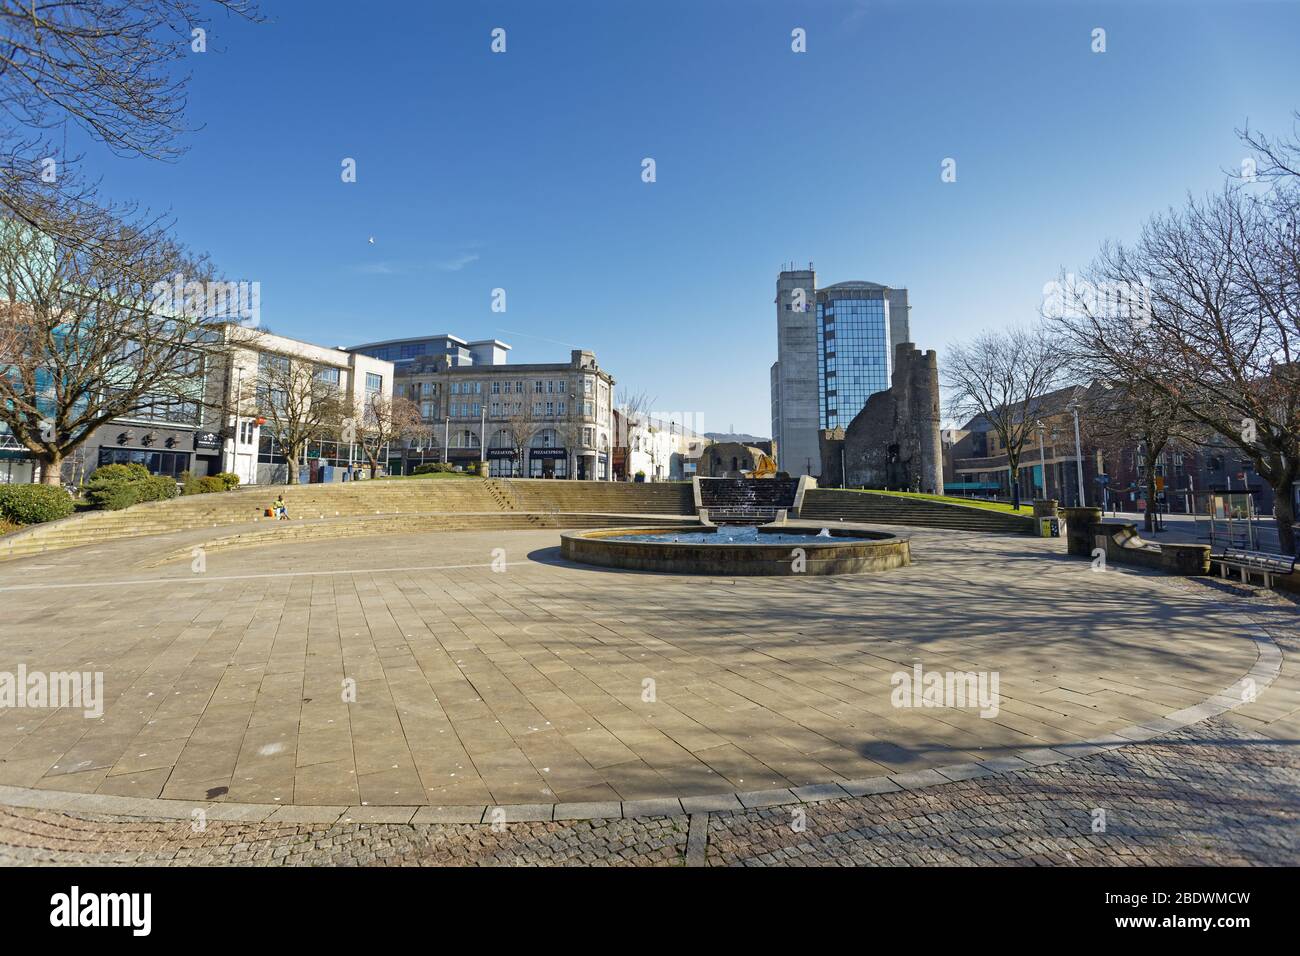 Im Bild: Der verlassene Castle Square im Stadtzentrum von Swansea, Wales, Großbritannien. Mittwoch 25 März 2020 Re: Covid-19 Coronavirus Pandemie, UK. Stockfoto